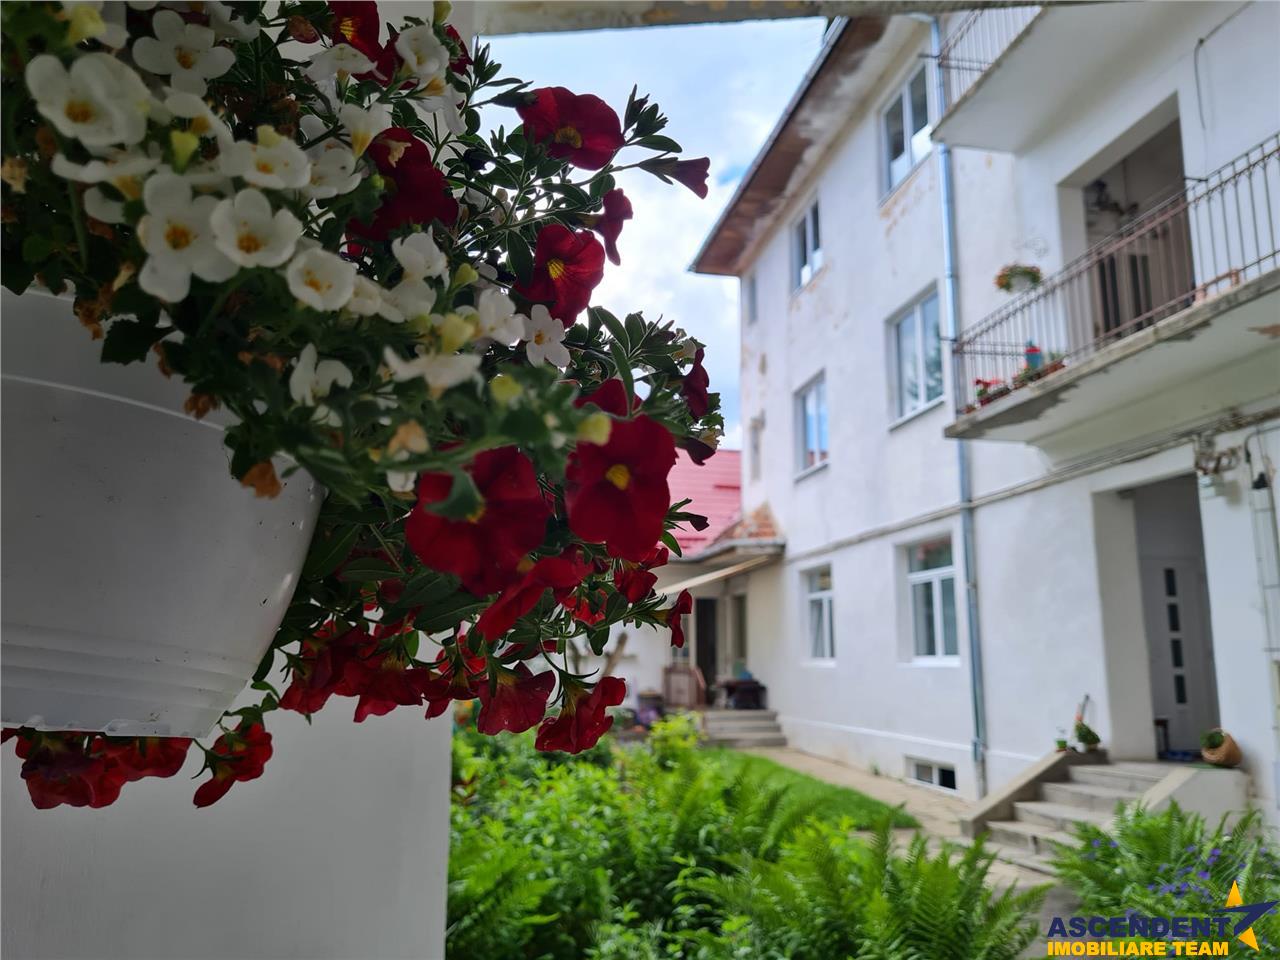 Proprietate la casa, cu gradina de flori, zona rezidentiala Centrala a Brasovului